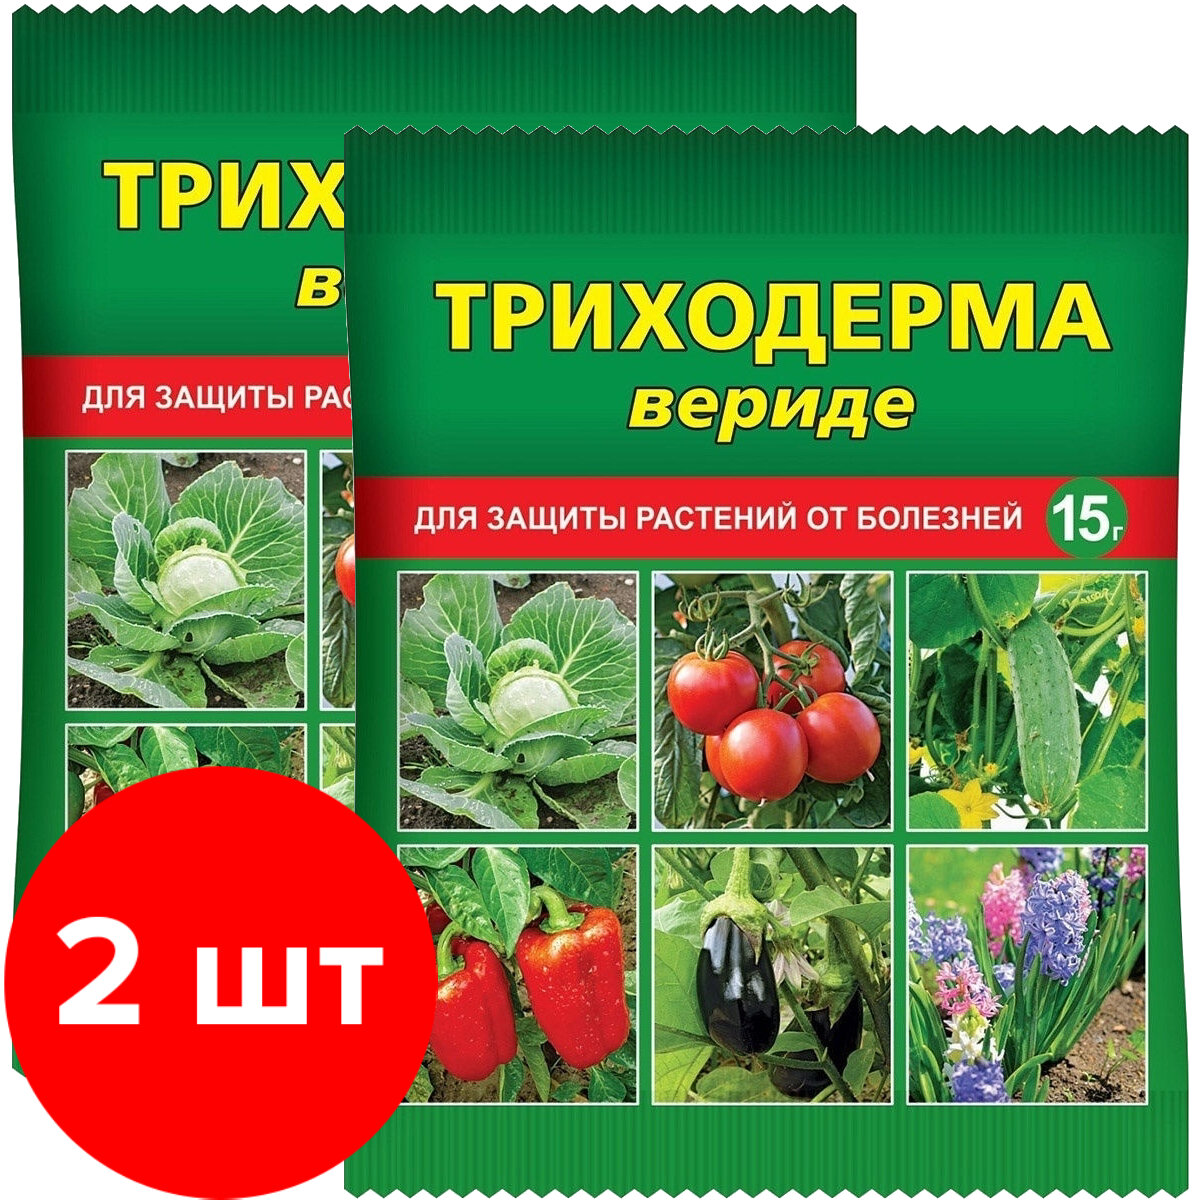 Средство для защиты растений от болезней Ваше хозяйство Триходерма вериде 2 шт по 15 г (30 г)